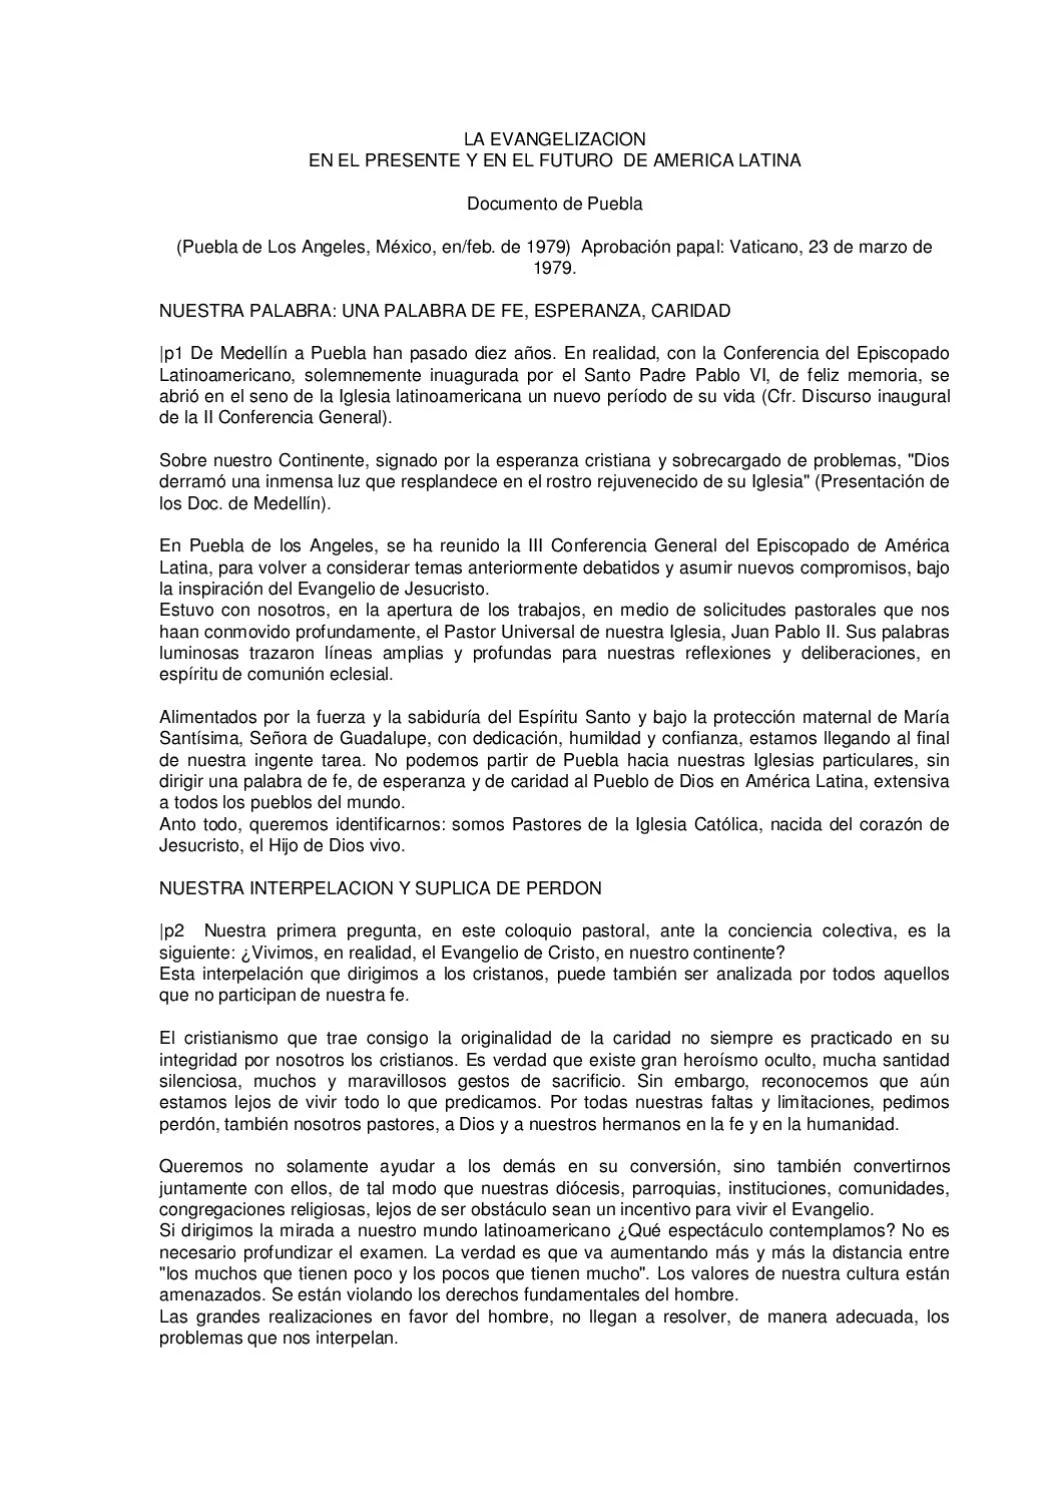 documento de puebla resumen - Qué nos dice el documento de Puebla